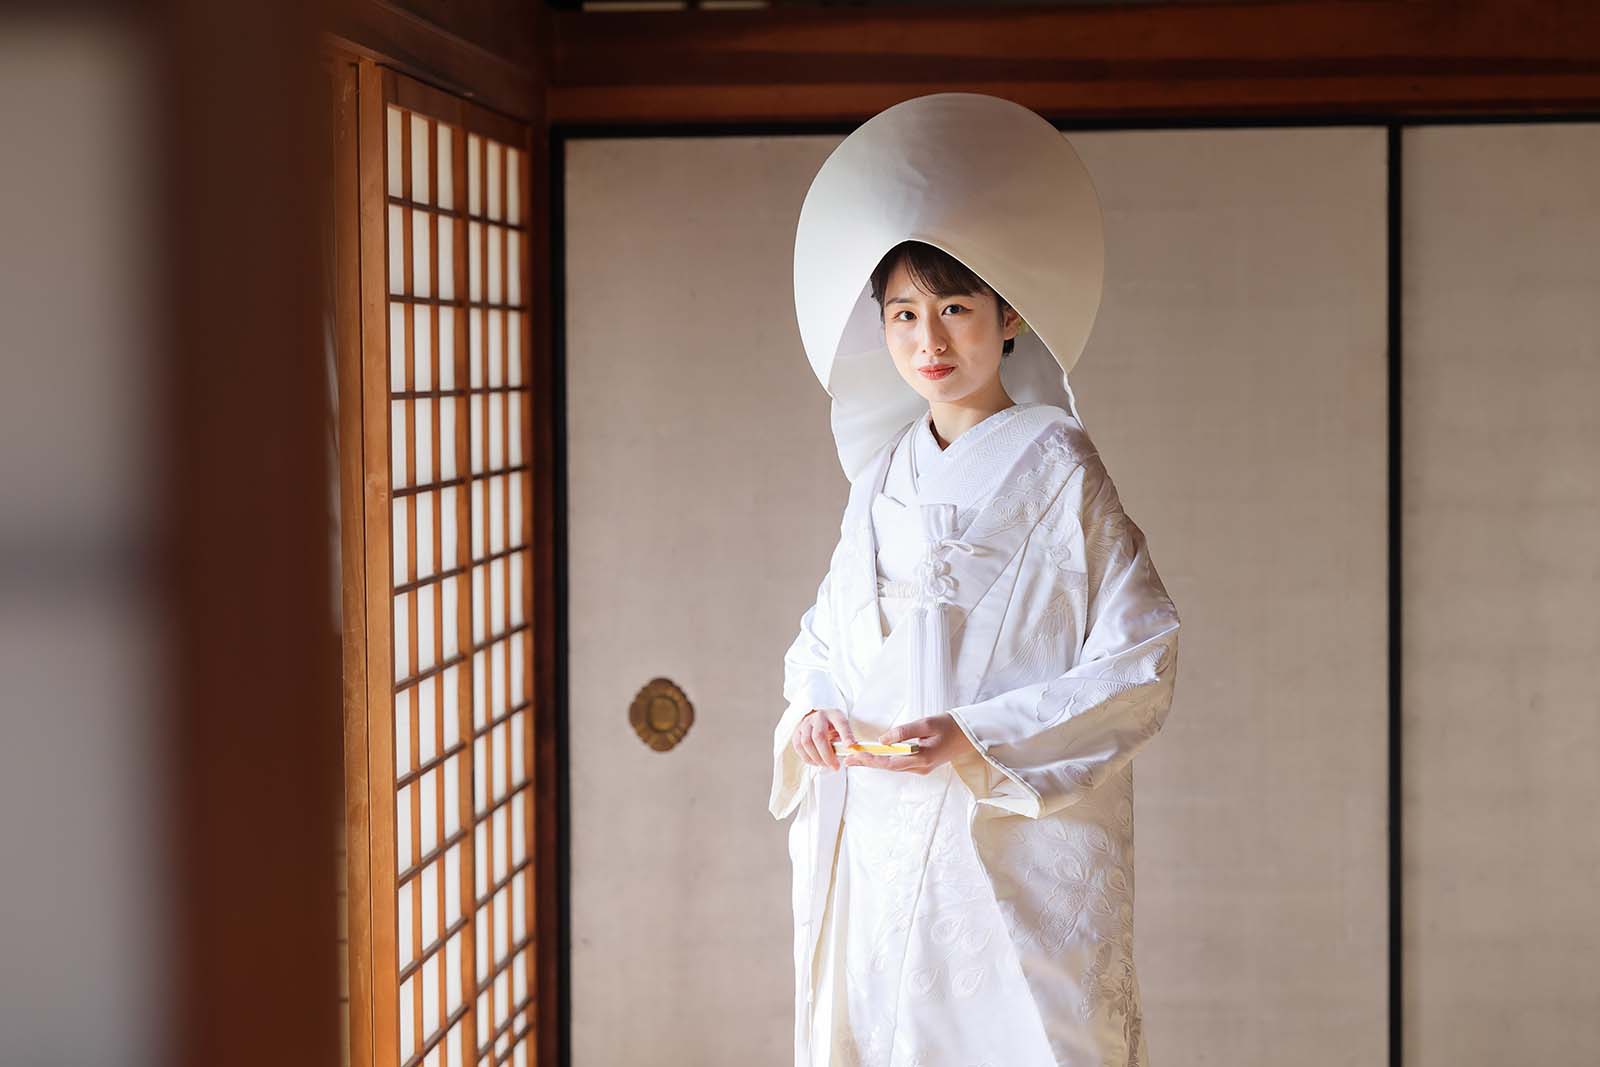 妙蓮寺和室にて。綿帽子姿もとてもよくお似合いでした。